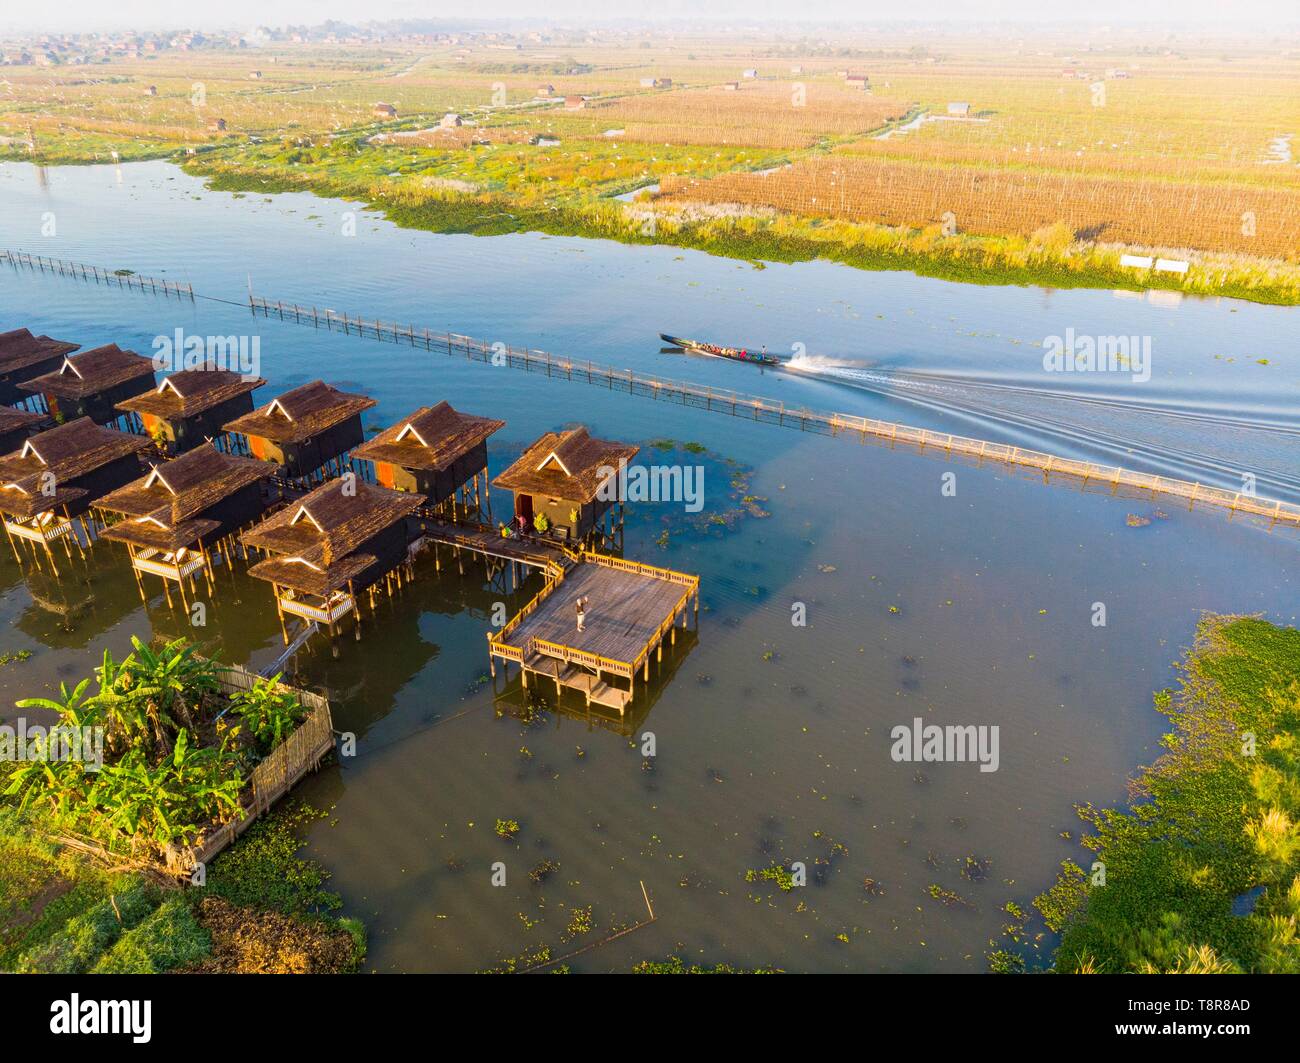 Myanmar (Birmanie), l'État Shan, au Lac Inle, Kela jardins flottants et la Paramount Inle hôtel avec bungalows sur pilotis (vue aérienne) Banque D'Images